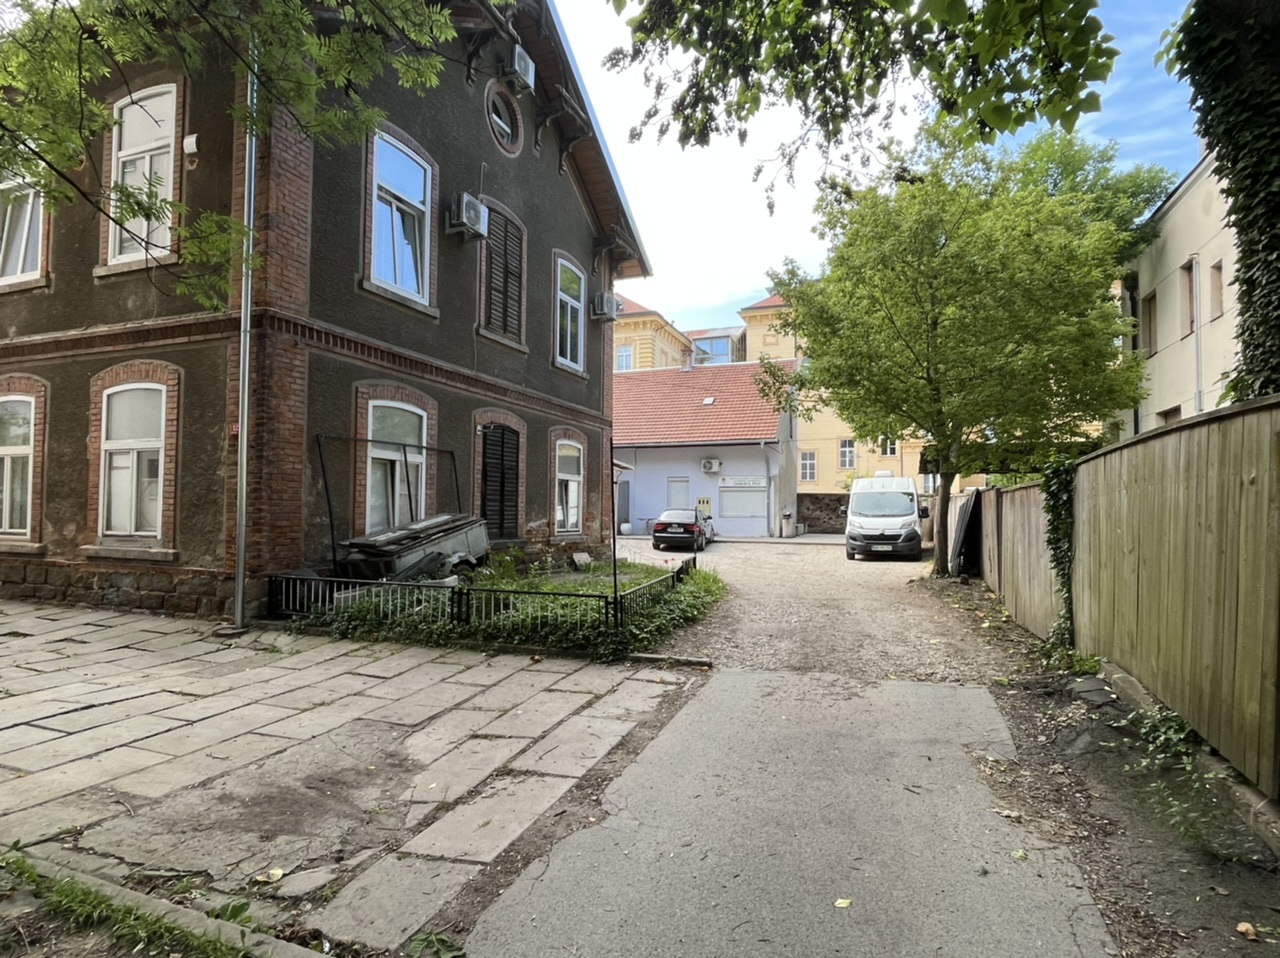 DNEVNA: Dnevni center za odvisnike povzroča skrbi bližnjim stanovalcem na Krekovi